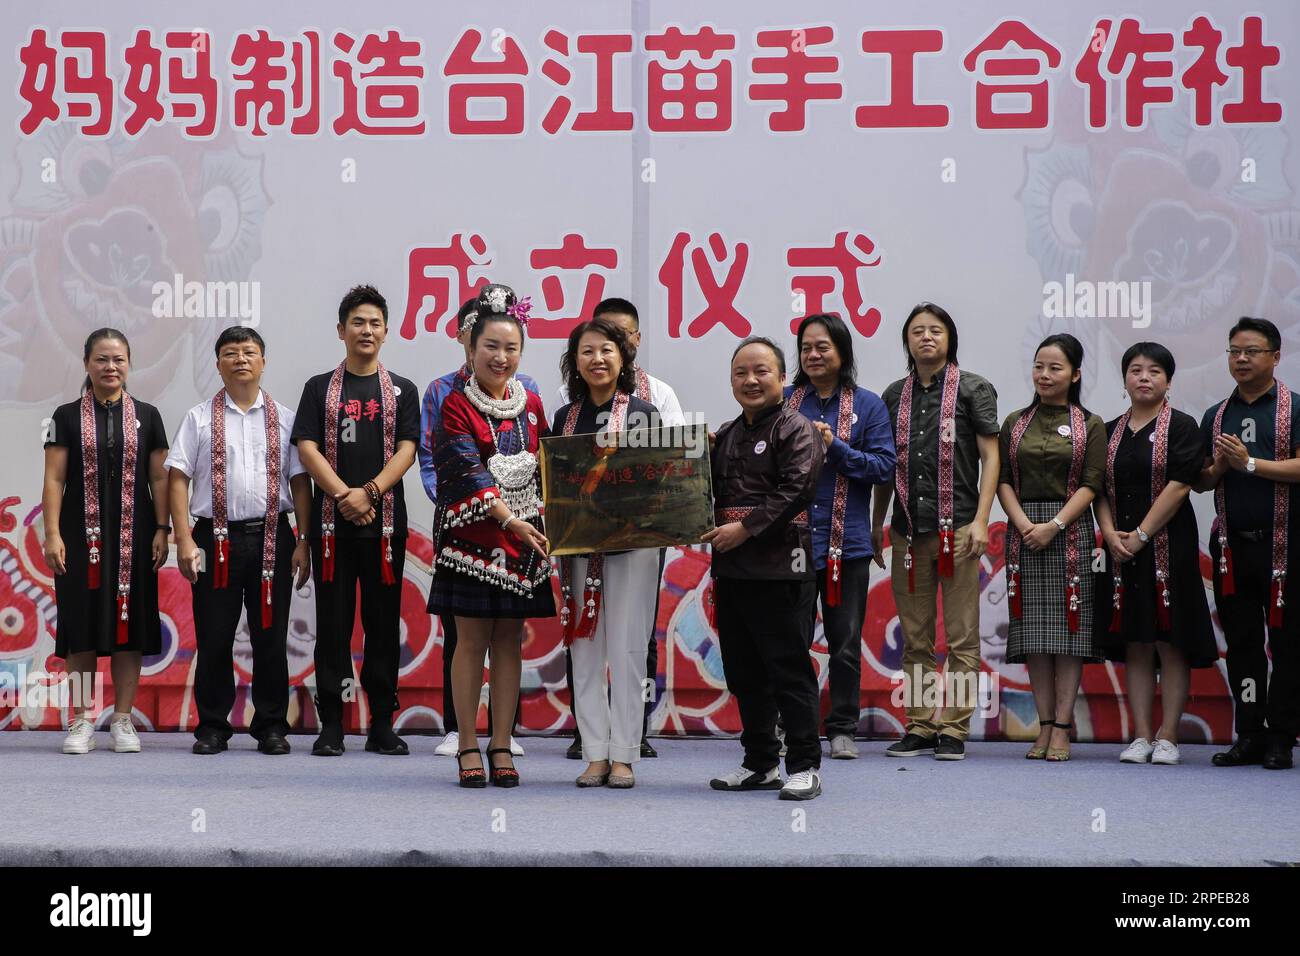 (190823) -- DANZHAI, 23 août 2019 -- les invités confèrent la plaque lors de la cérémonie de création d'une coopérative artisanale Miao dans le comté de Taijiang, province du Guizhou au sud-ouest de la Chine, le 22 août 2019. Une coopérative artisanale et une coopérative artisanale batik de MOM Handworks , un projet de bien-être public initié par la Fondation chinoise pour le développement des femmes (CWDF), ont été mises en service à Taijiang et Danzhai, respectivement. Le débarquement de deux coopératives explore un nouveau mode de réduction de la pauvreté, combinant les gouvernements locaux, les organisations à but non lucratif et les institutions culturelles ensemble au sein du deve Banque D'Images